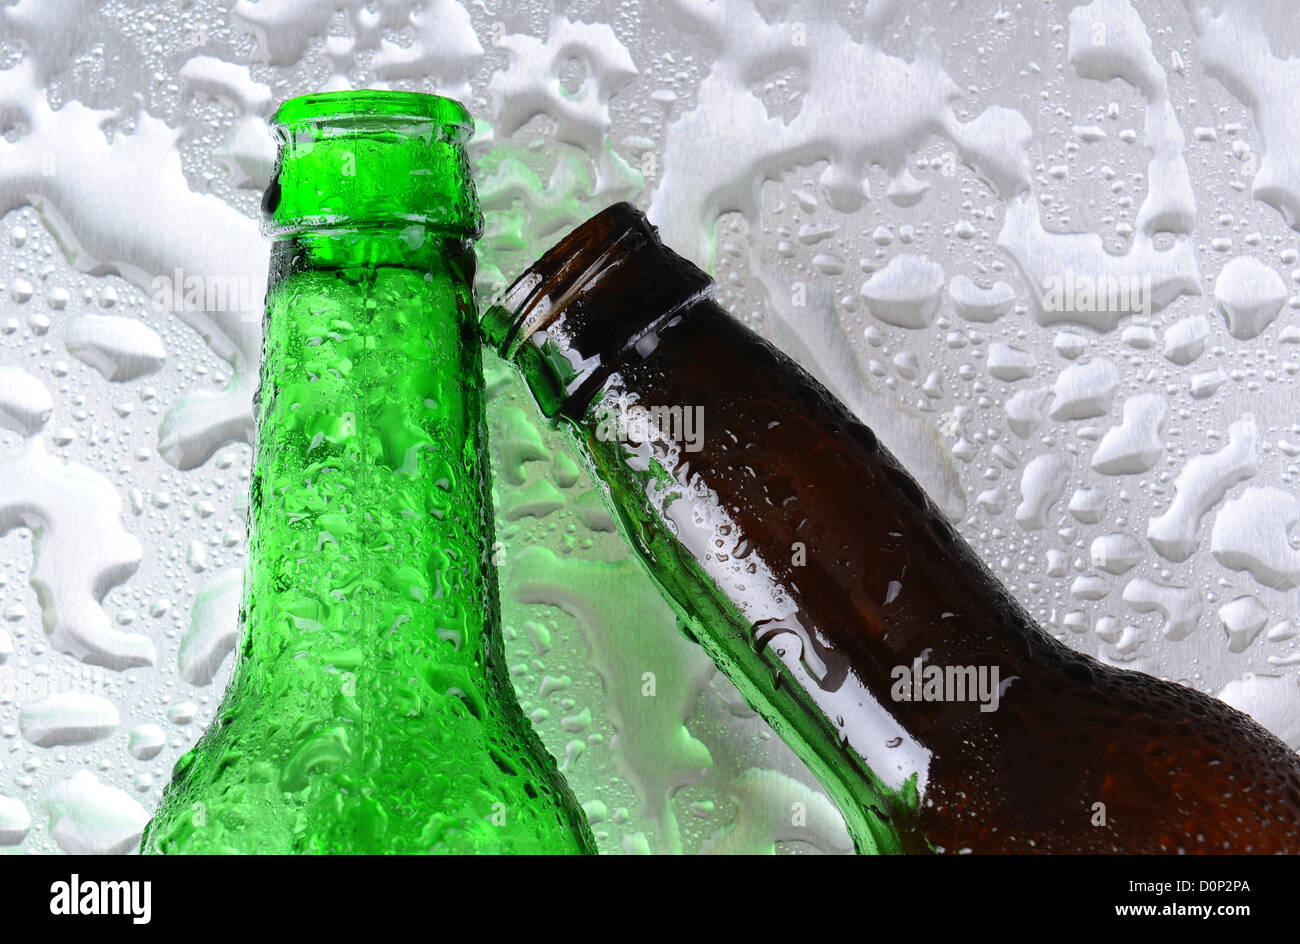 Nahaufnahme von zwei Bierflaschen auf einer nassen Edelstahl-Oberfläche. Eine Flasche ist grün das andere braun. Stockfoto